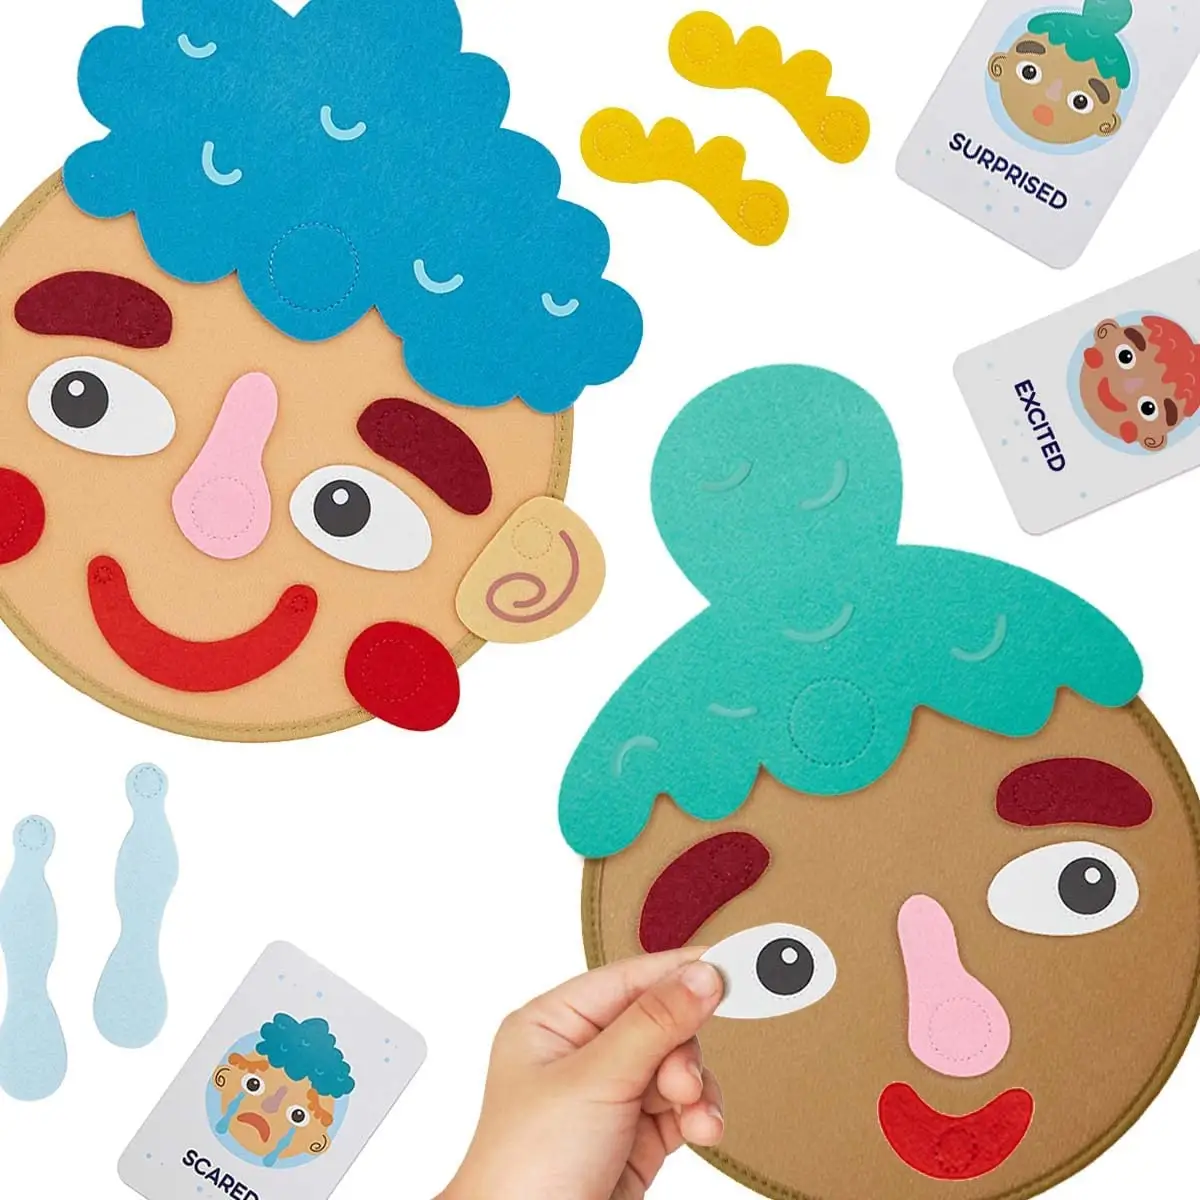 Tarjetas de aprendizaje para niños, juguete de aprendizaje para hacer caras y mostrar sensaciones, 9 tarjetas de emoticación para niños en edad preescolar